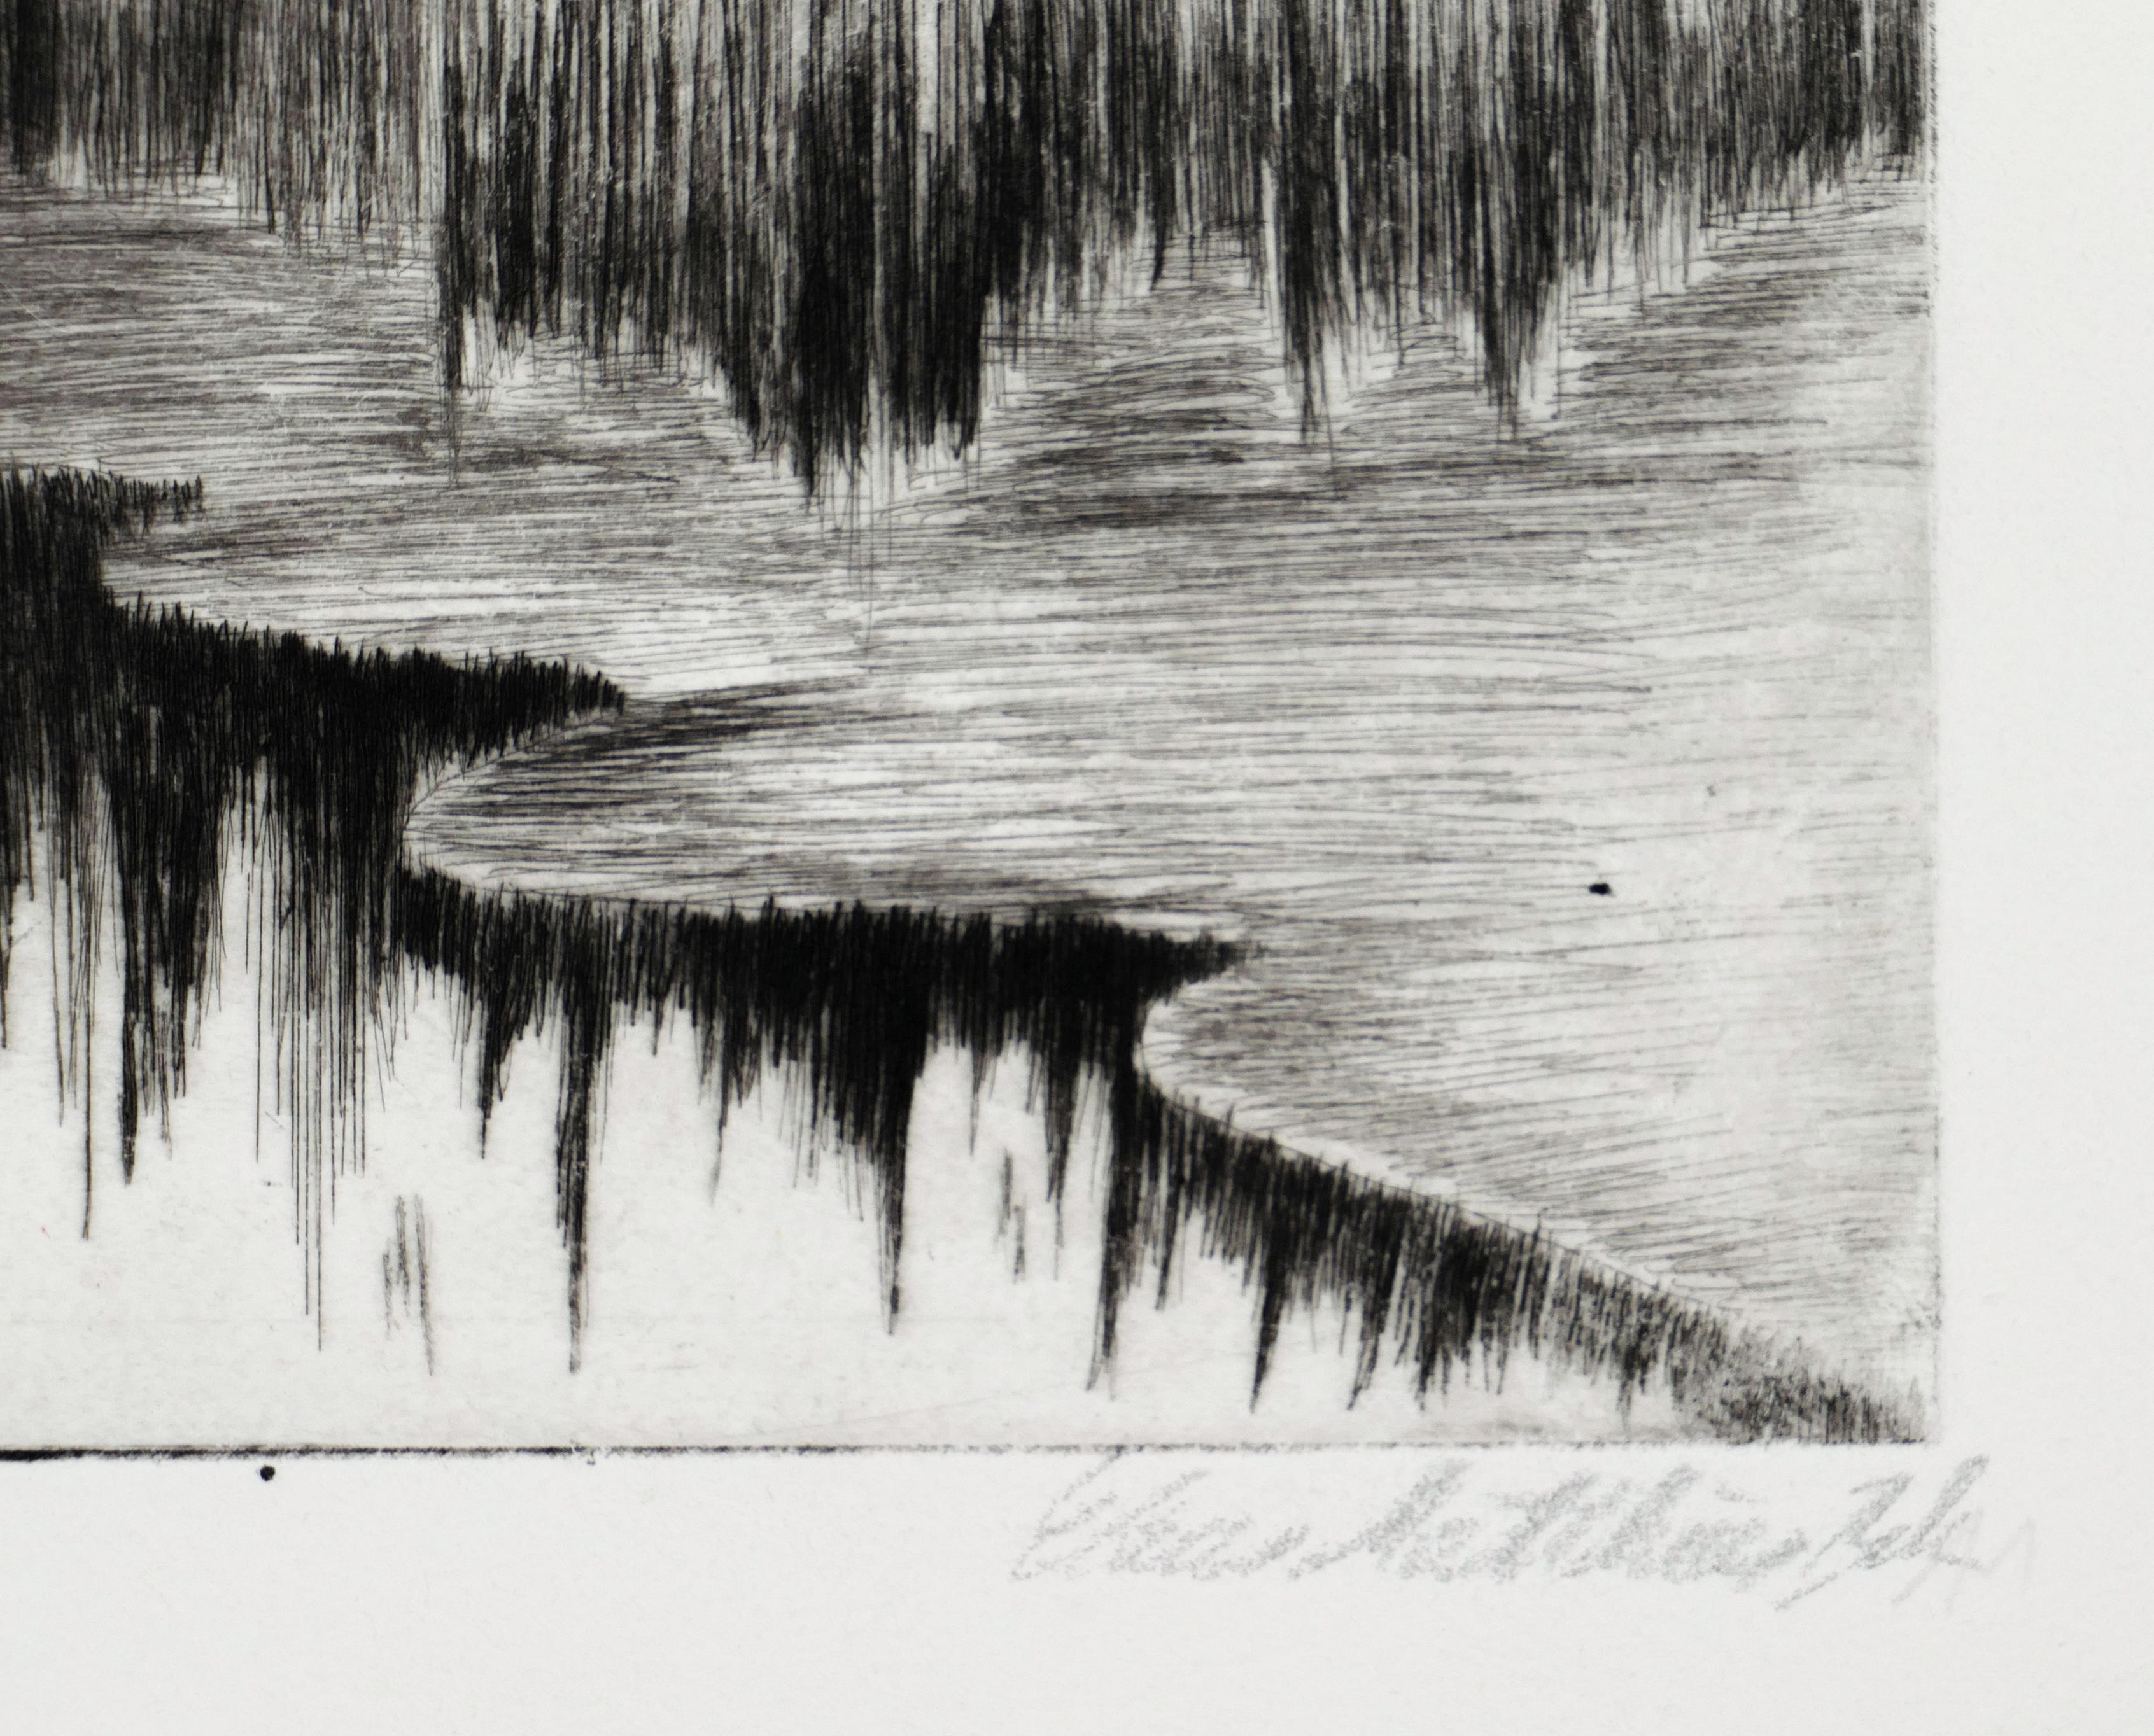 Abmessungen des Bildes: 10 x 14,8 cm.

Zwei Seelandschaften sind das Thema dieser beiden Originalradierungen und Kaltnadelradierungen in Schwarzweiß auf Papier, die von einem deutschen Künstler geschaffen wurden, dessen Signatur nicht vollständig